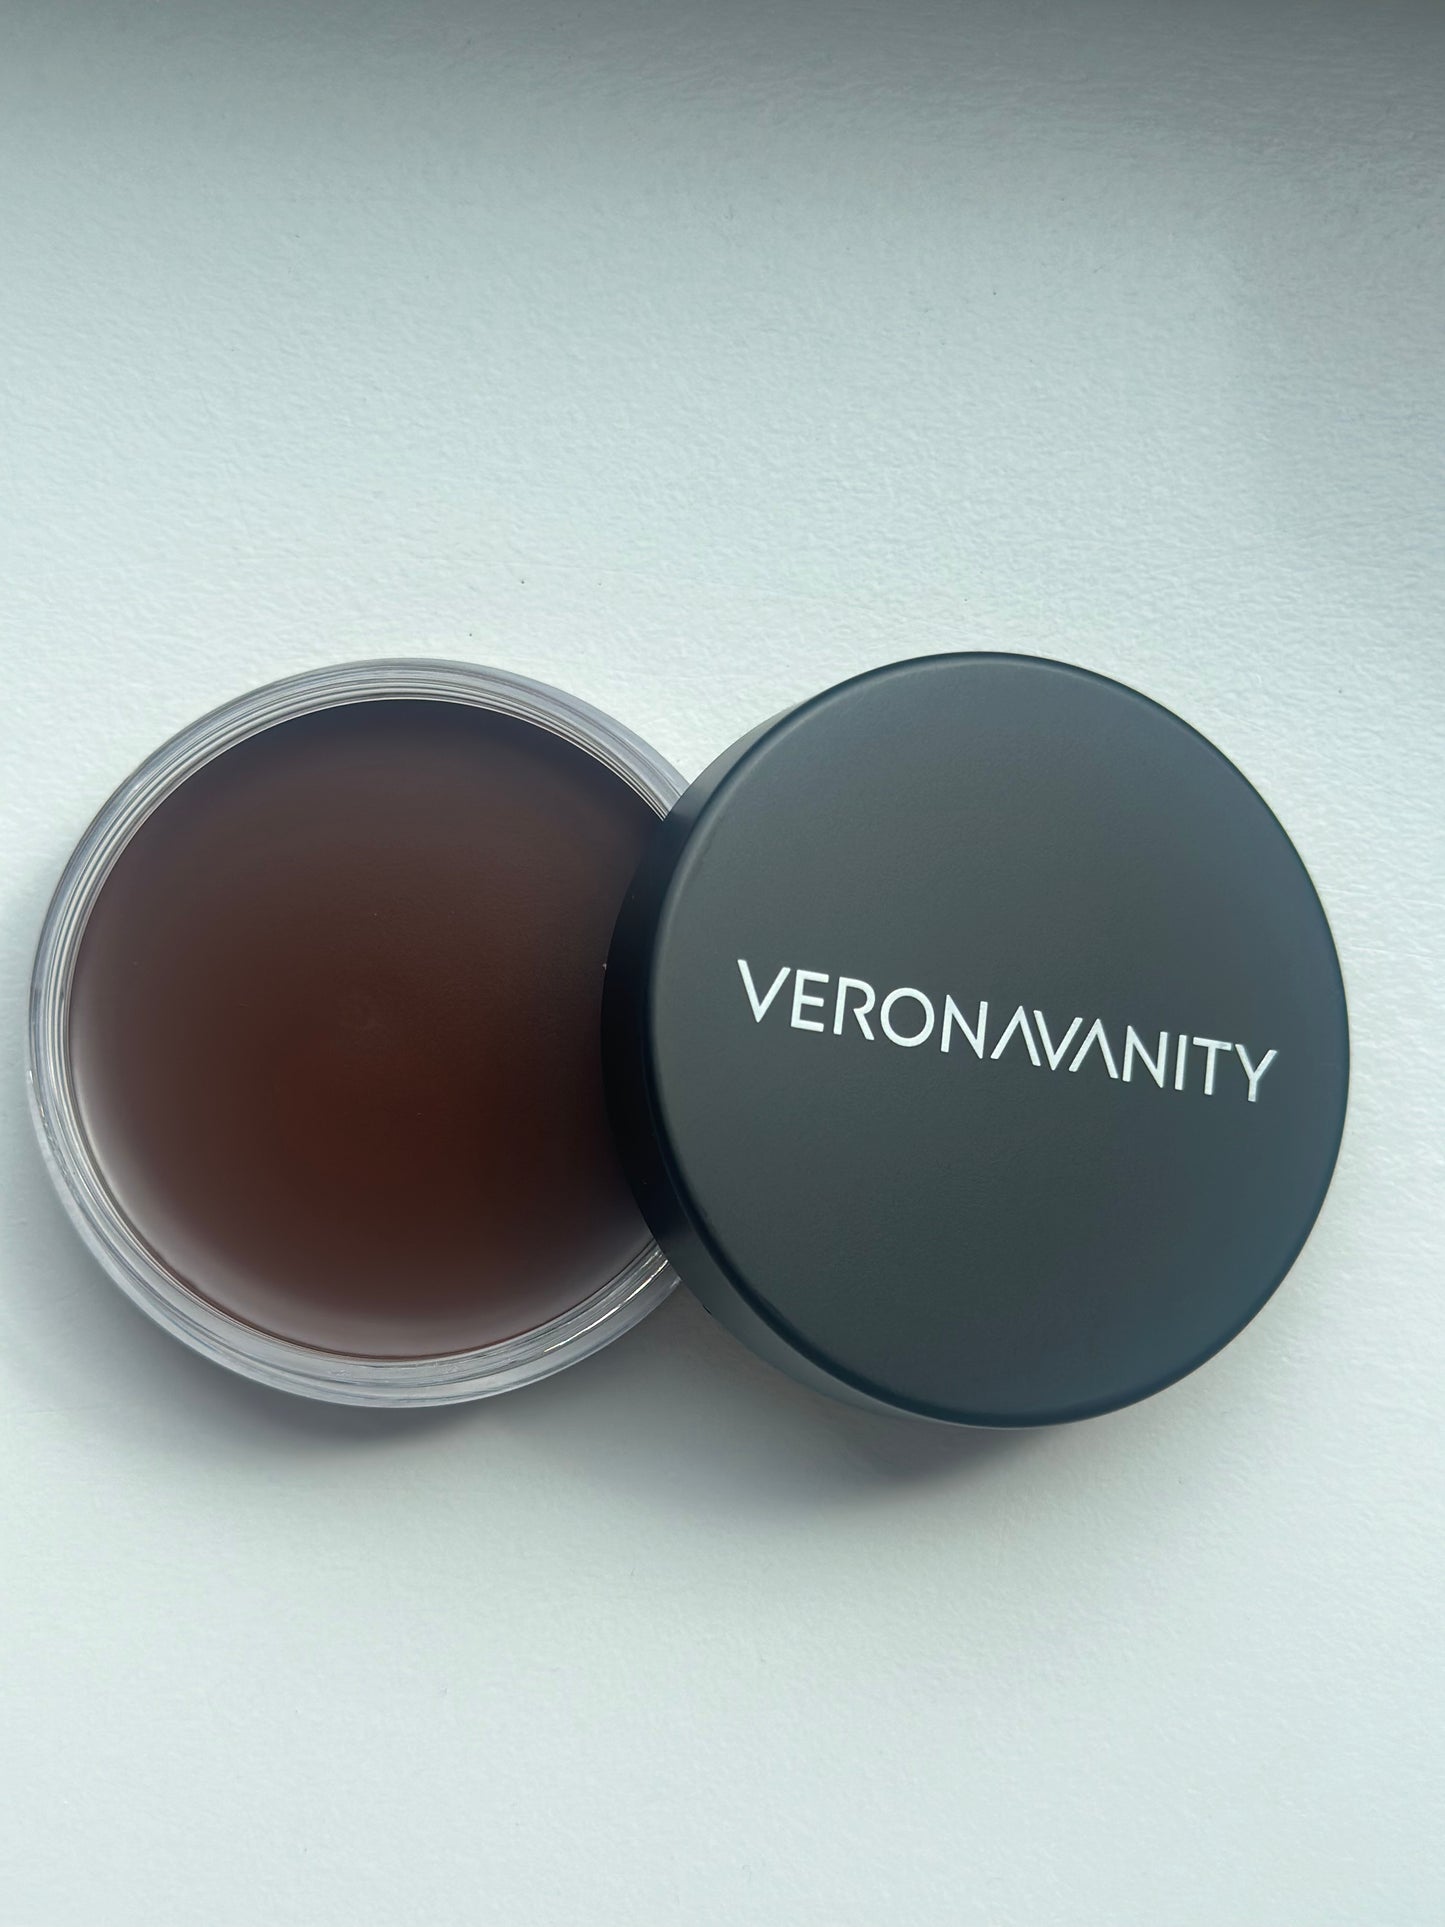 Veronavanity cream bronzer